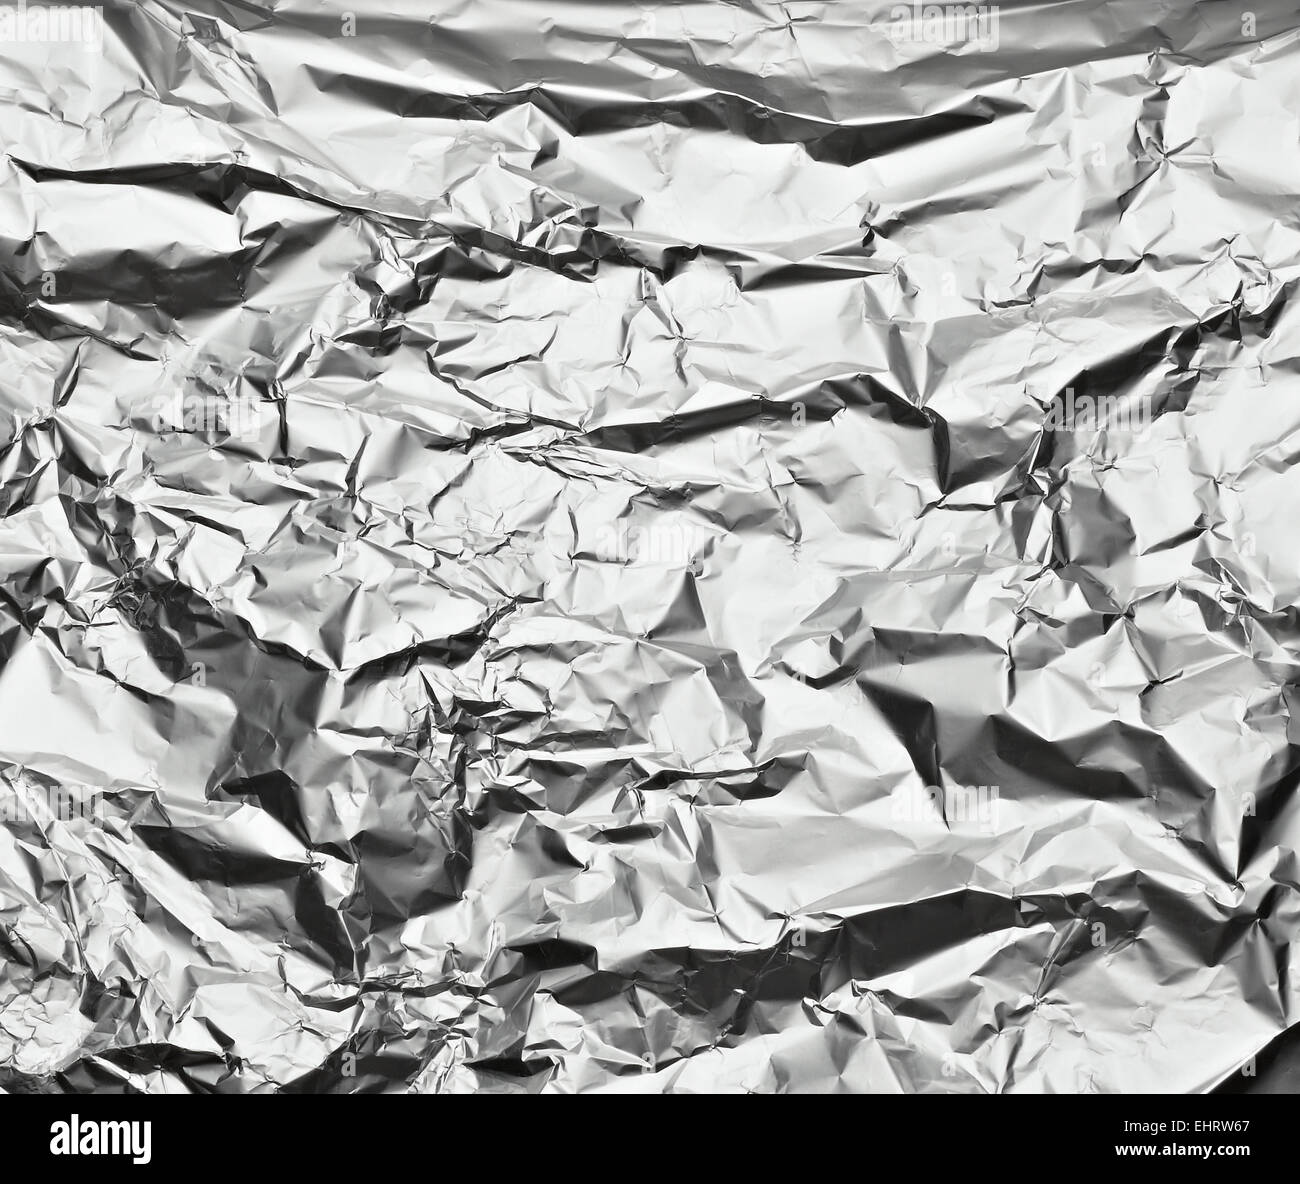 aluminum foil Stock Photo